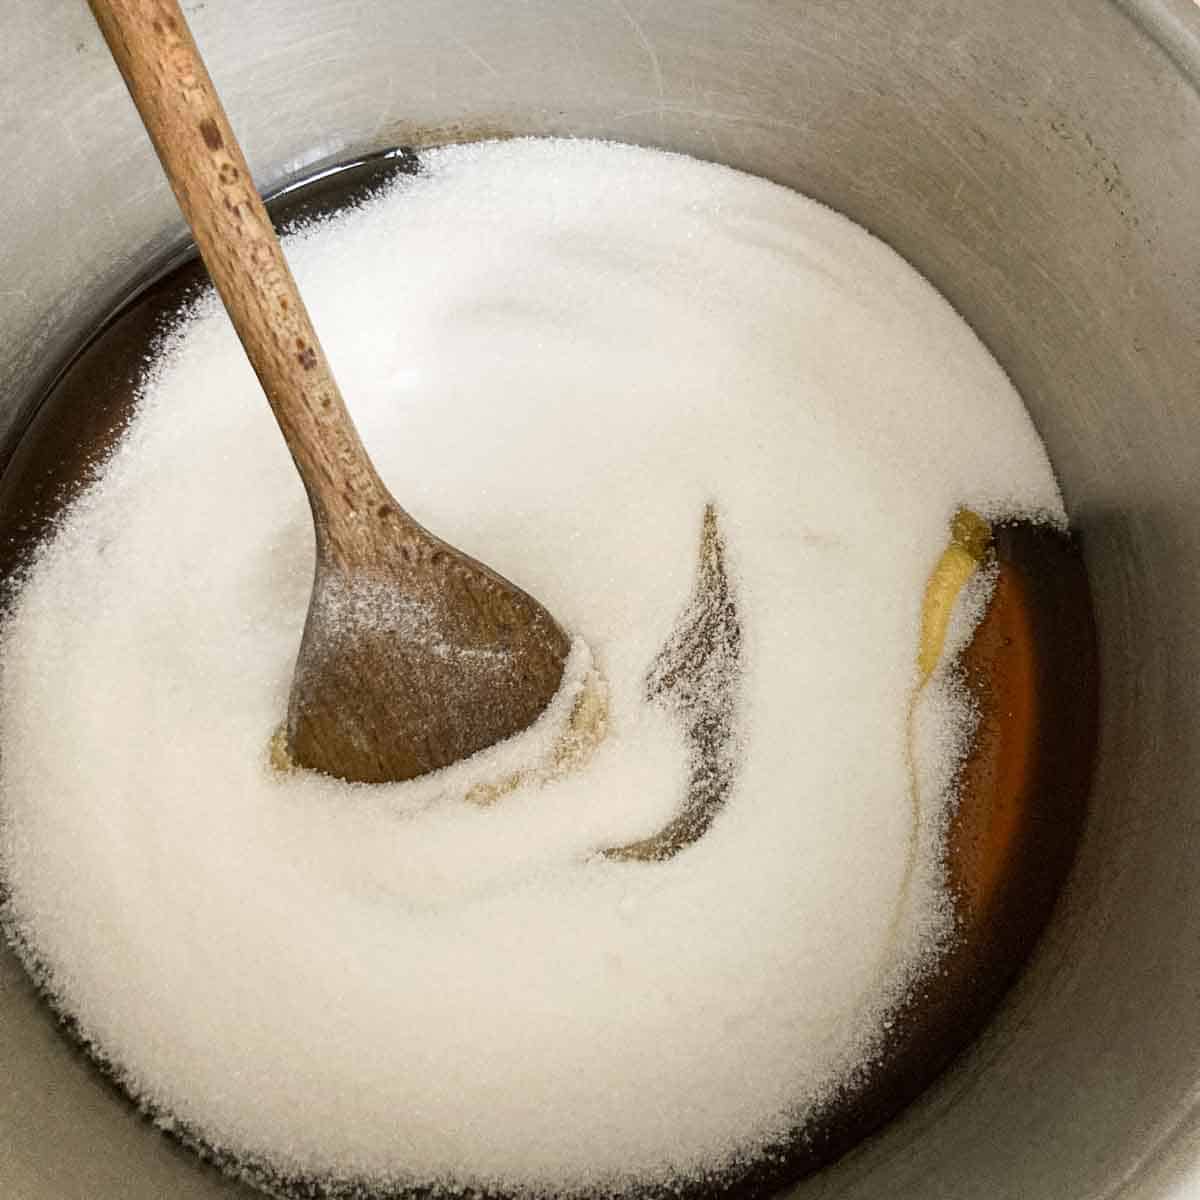 Zucker in Topf mit warmem Honig aufgelöst.